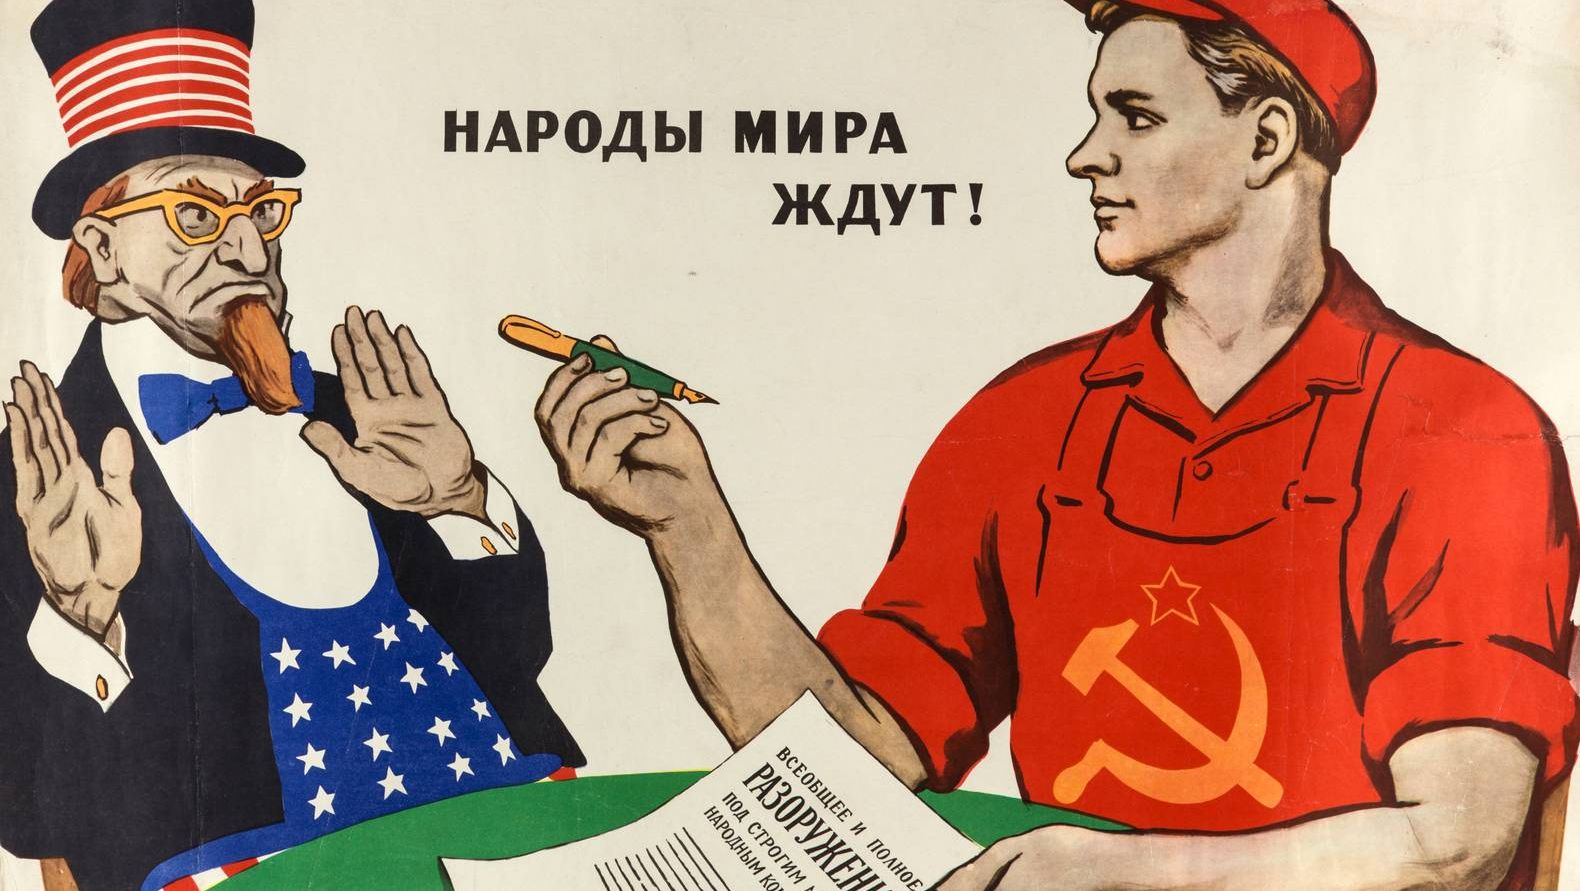 Советский плакат. Народы мира ждут! 1962